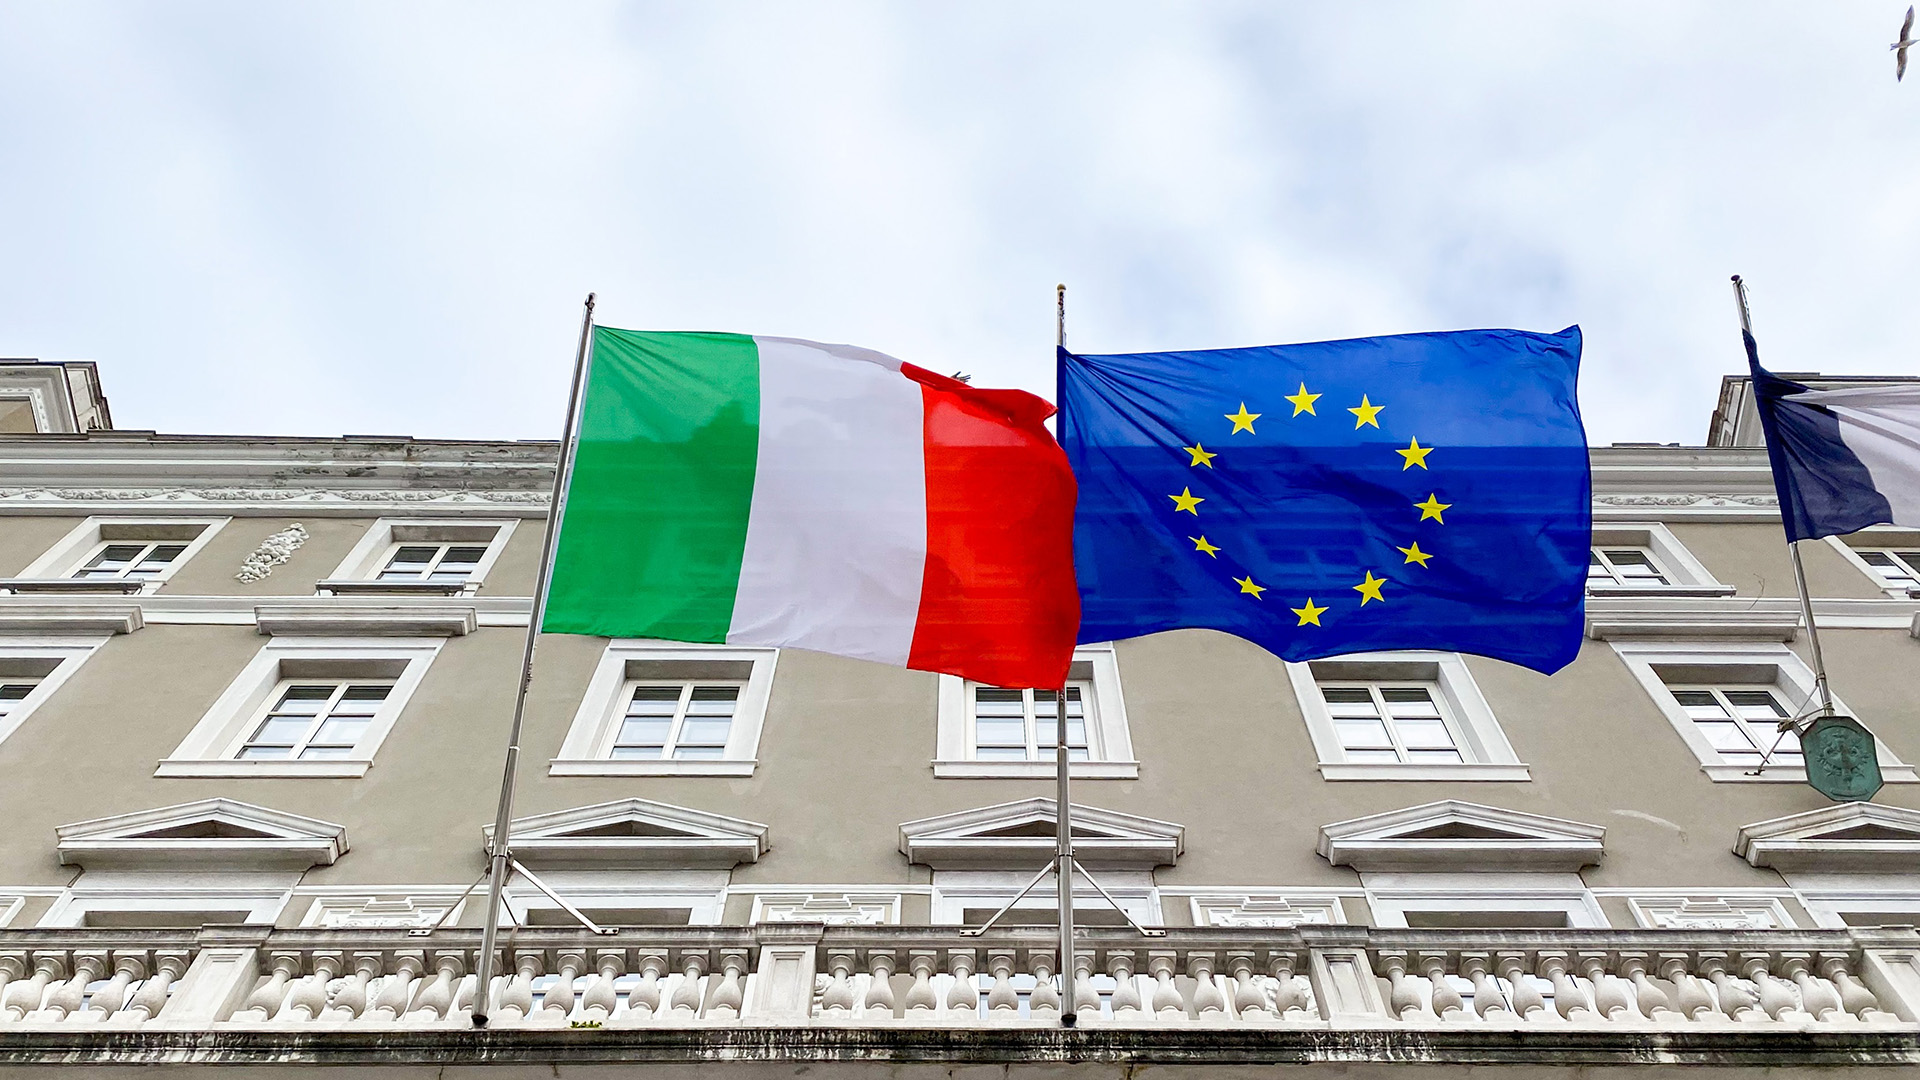 Può un cittadino straniero diventare cittadino italiano?